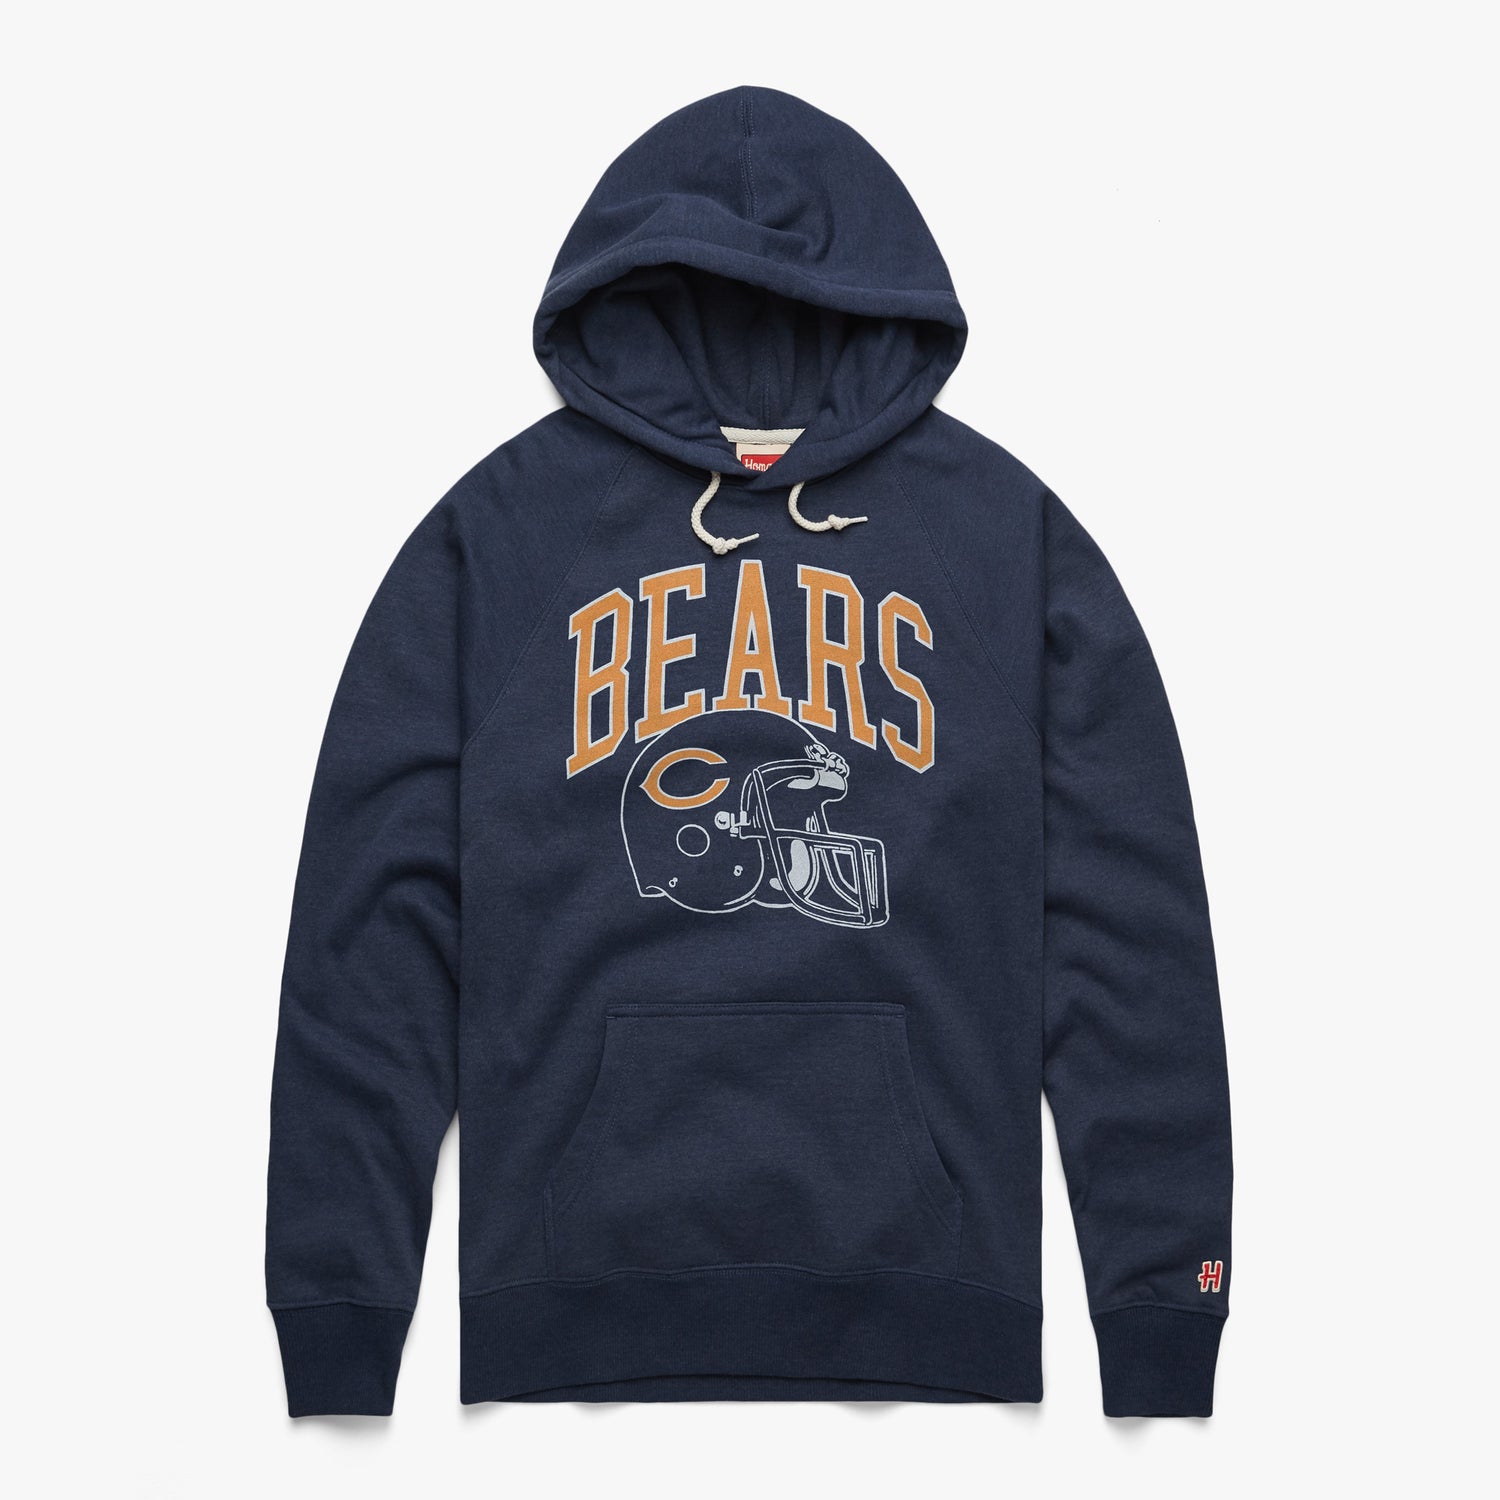 chicago bears hoodie vintage